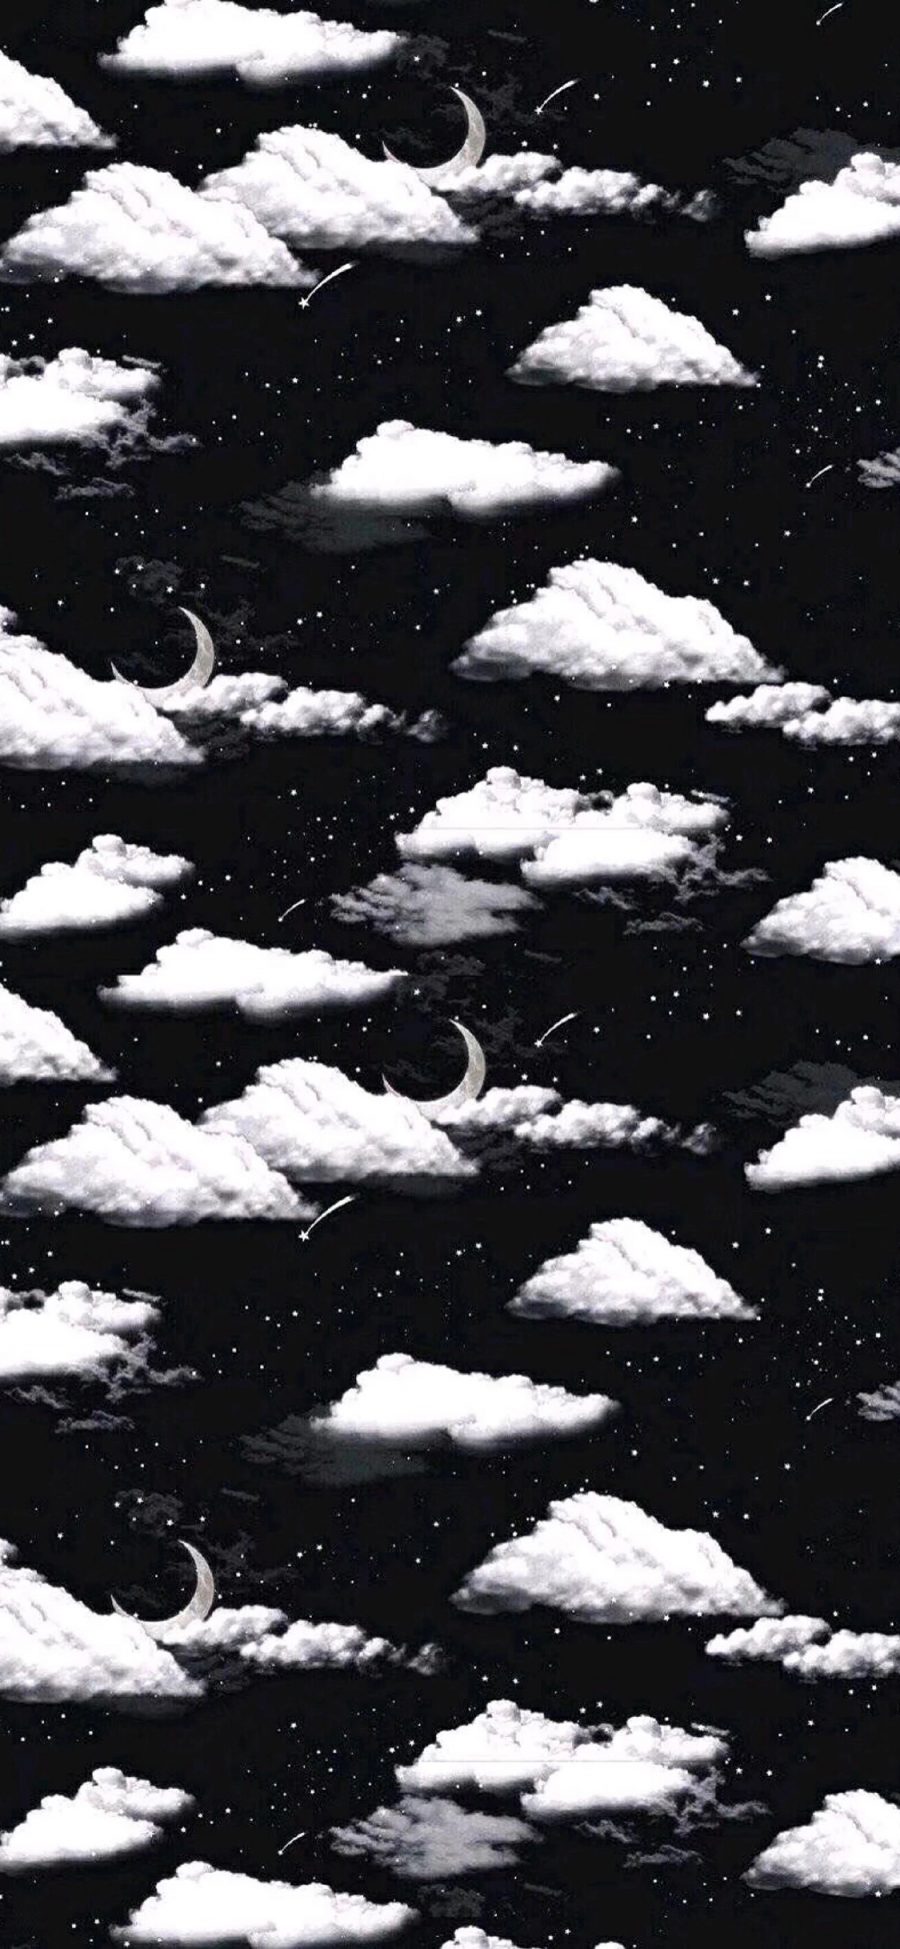 [2436×1125]插图 云朵 月牙 黑白 平铺 苹果手机动漫壁纸图片